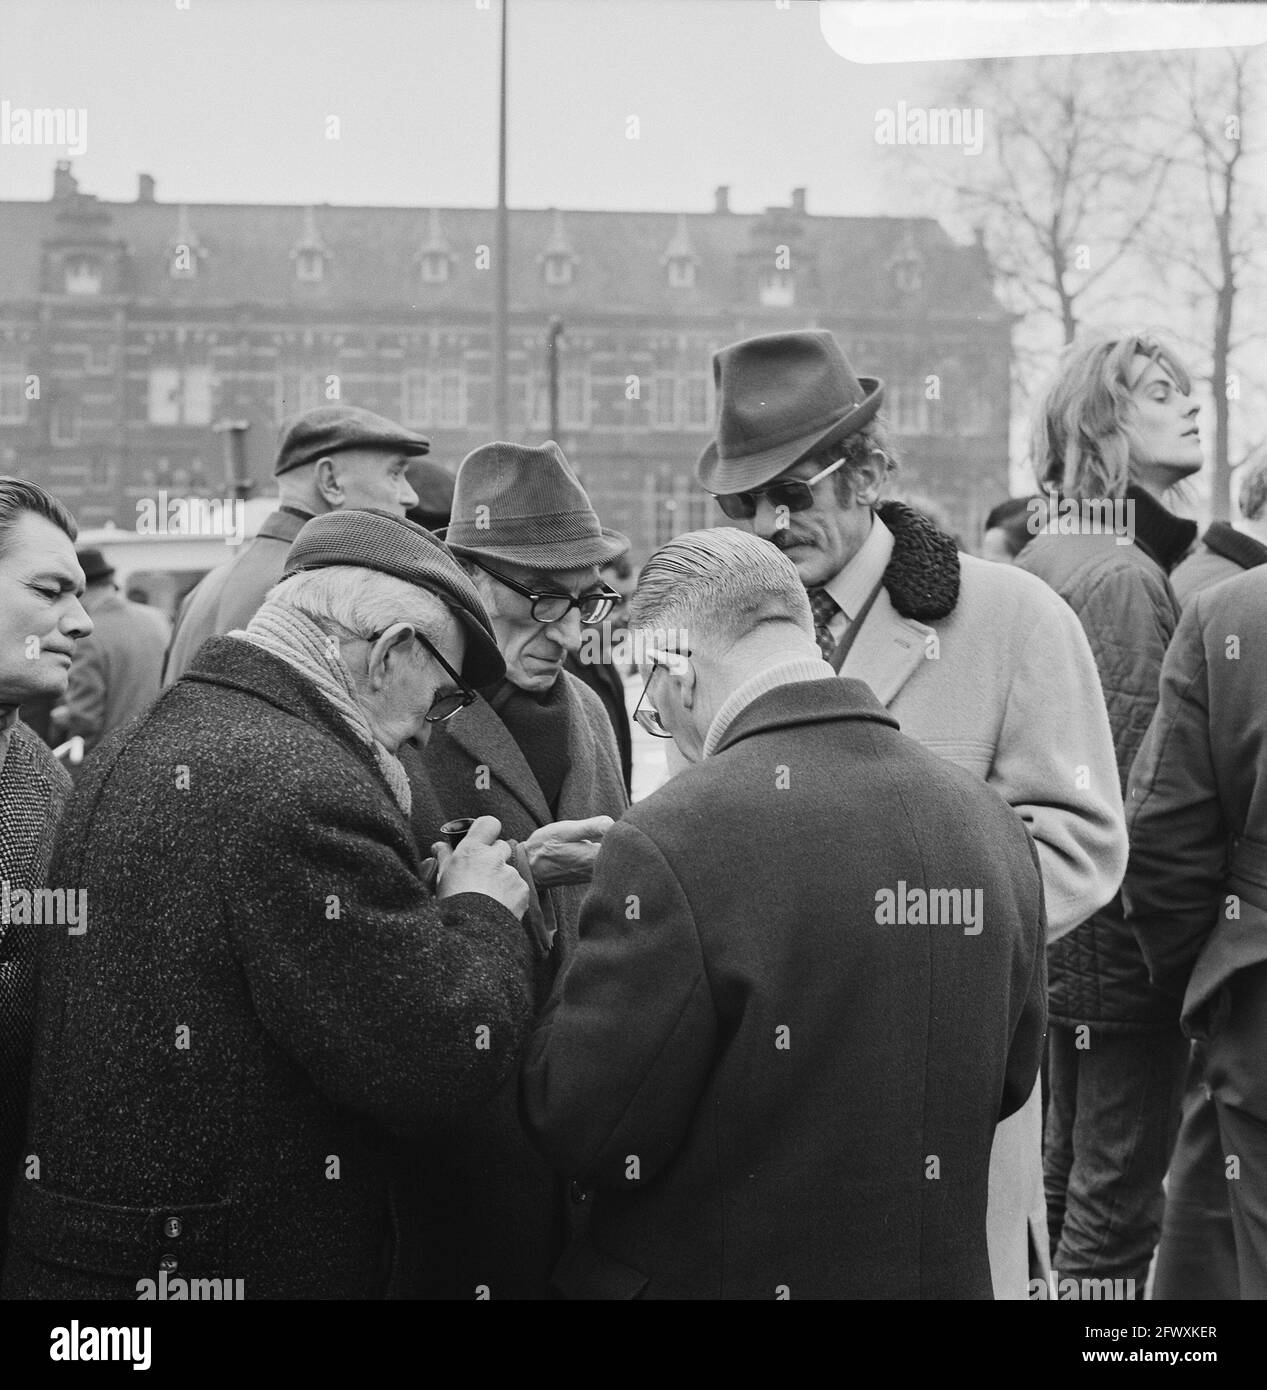 Udienza al Waterlooplein, Amsterdam, 20 febbraio 1971, Paesi Bassi, foto agenzia stampa del xx secolo, notizie da ricordare, documentario, pho storico Foto Stock